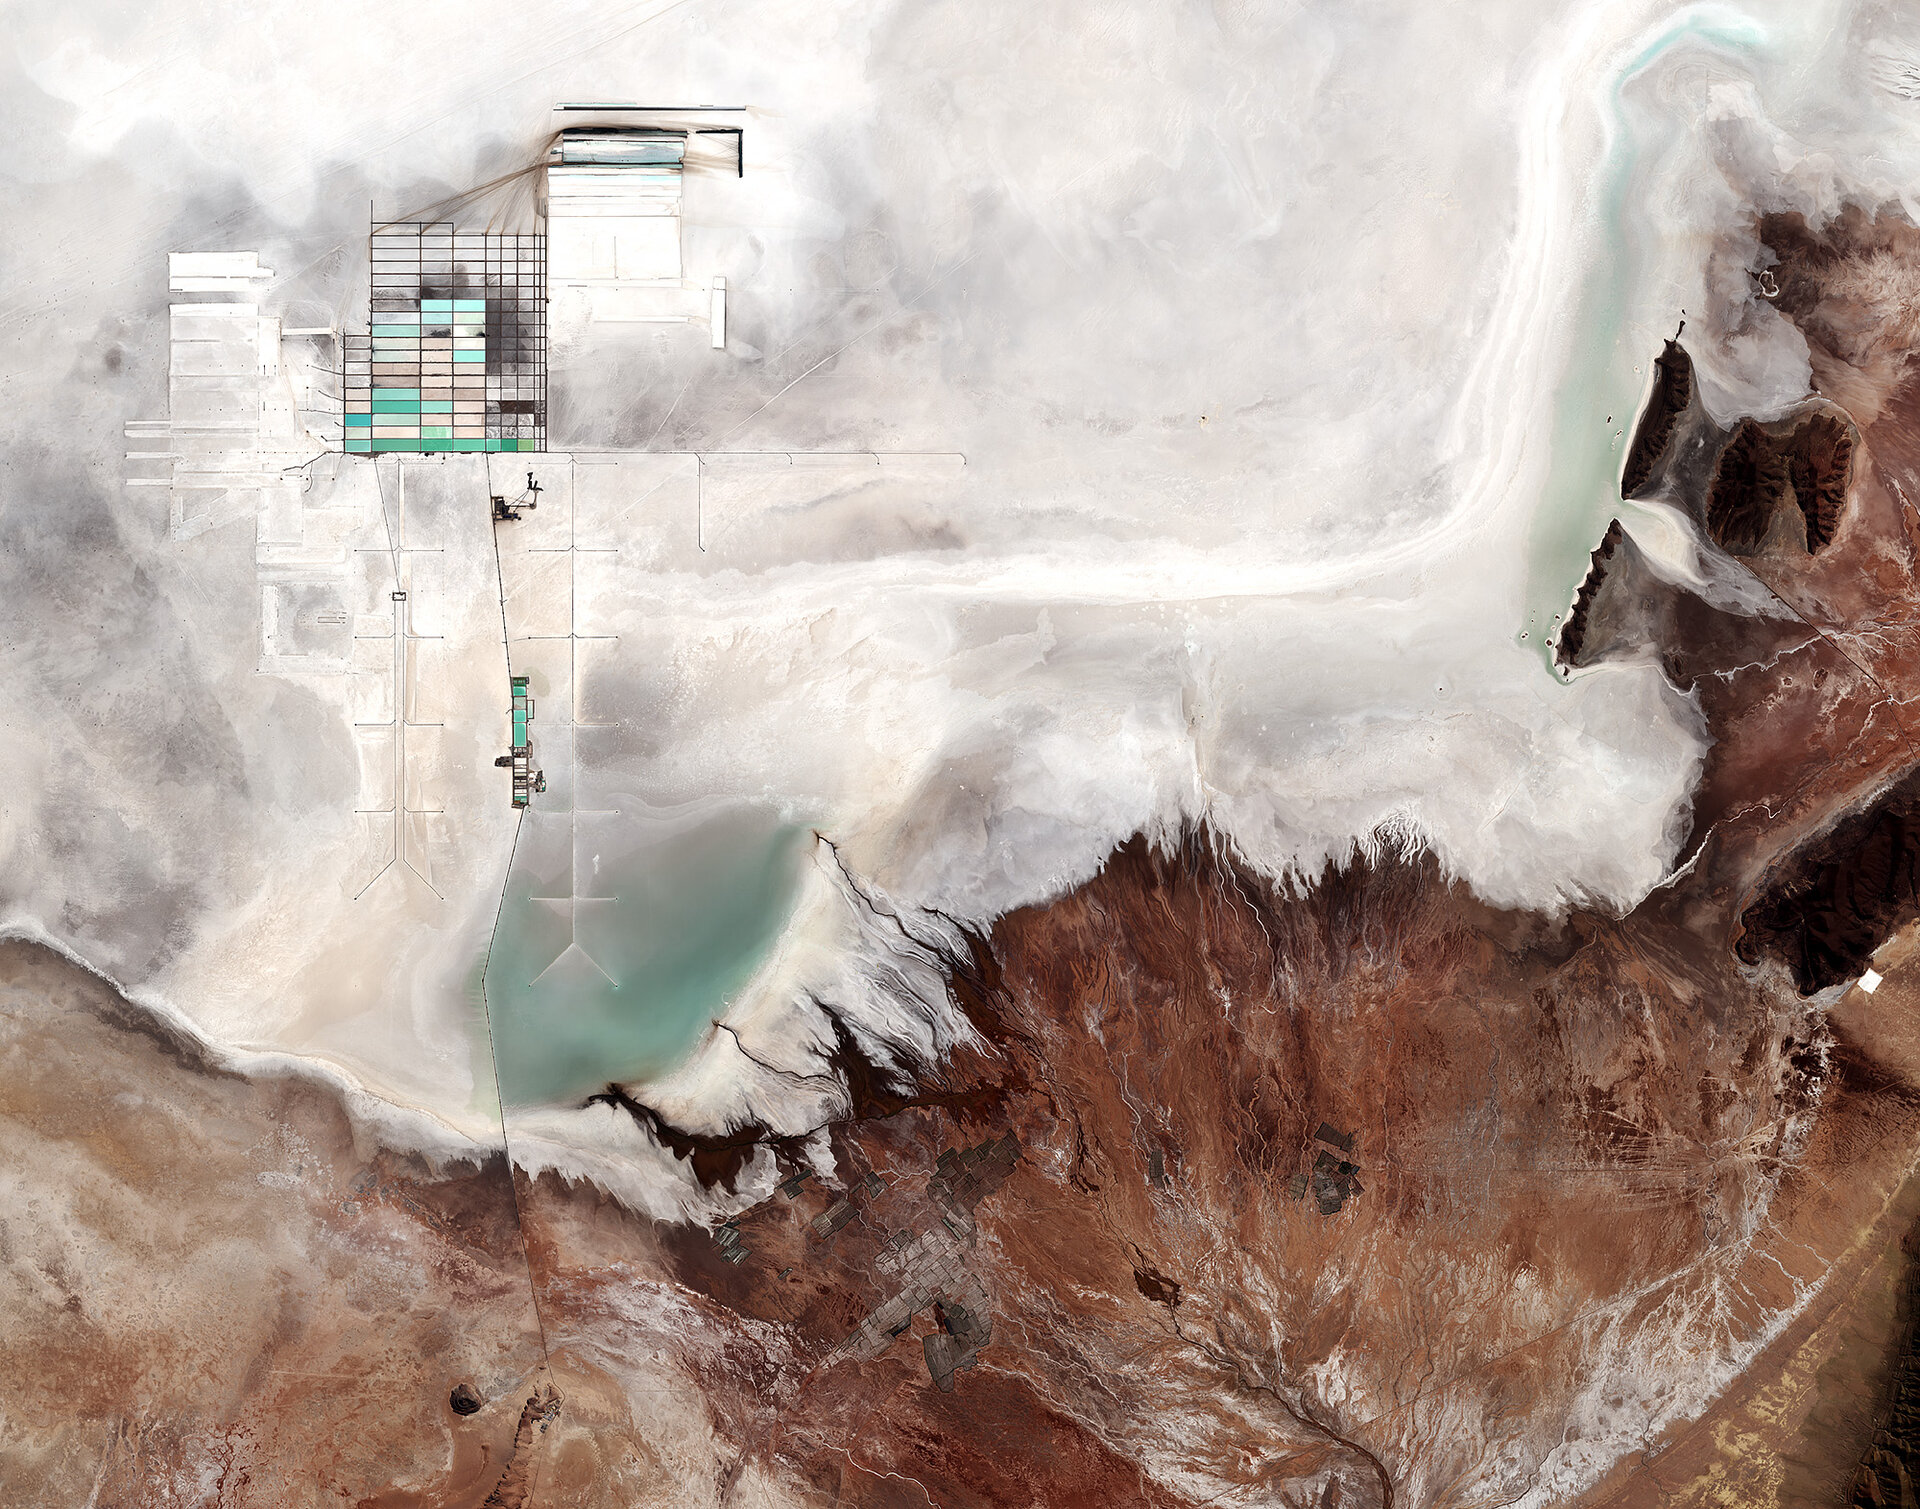 Uyuni salt flat, Bolivia